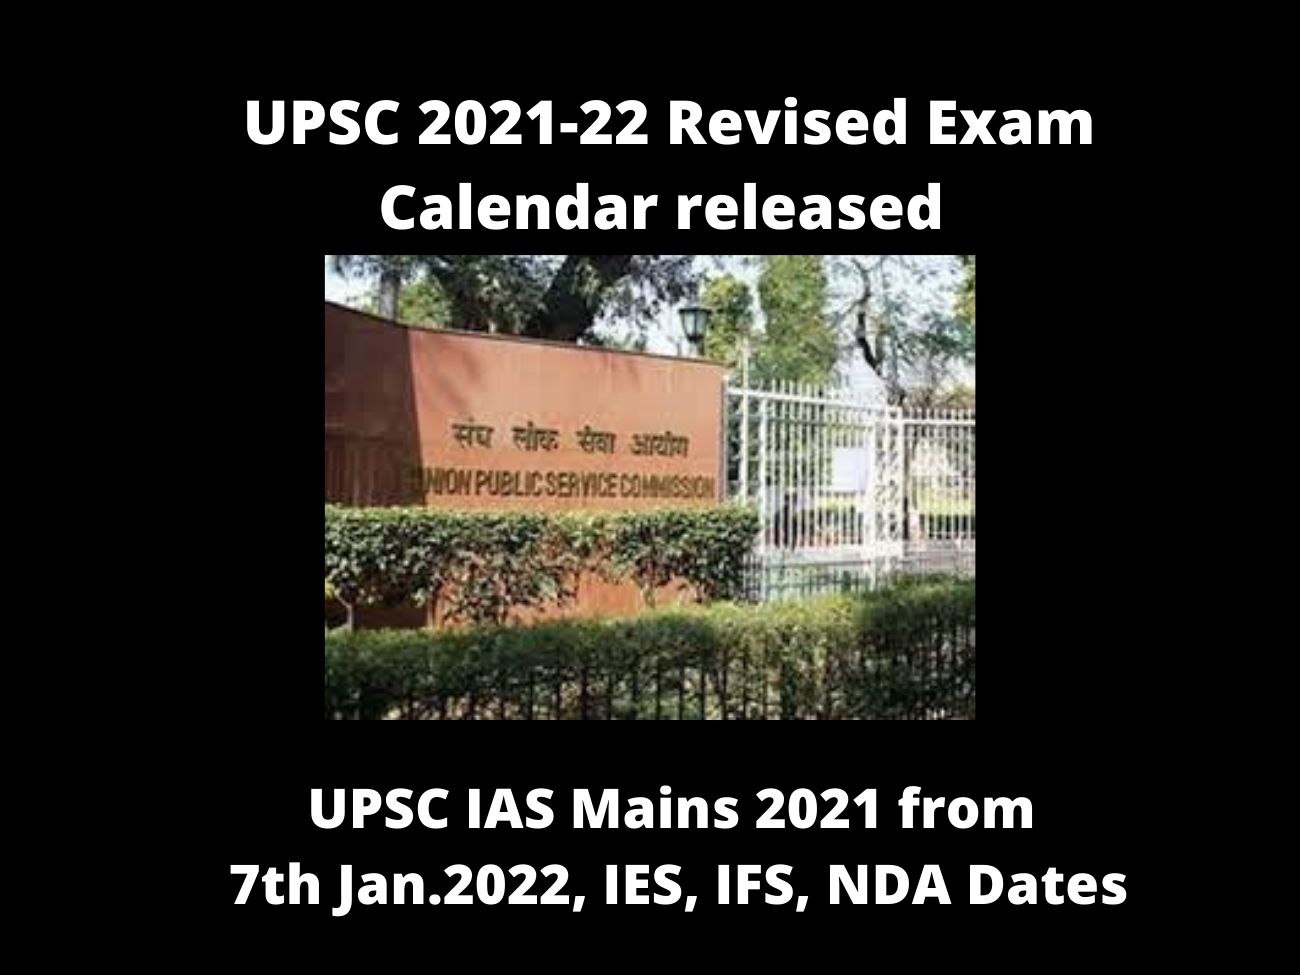 UPSC EXAM 2021-2022 Revised Calendar